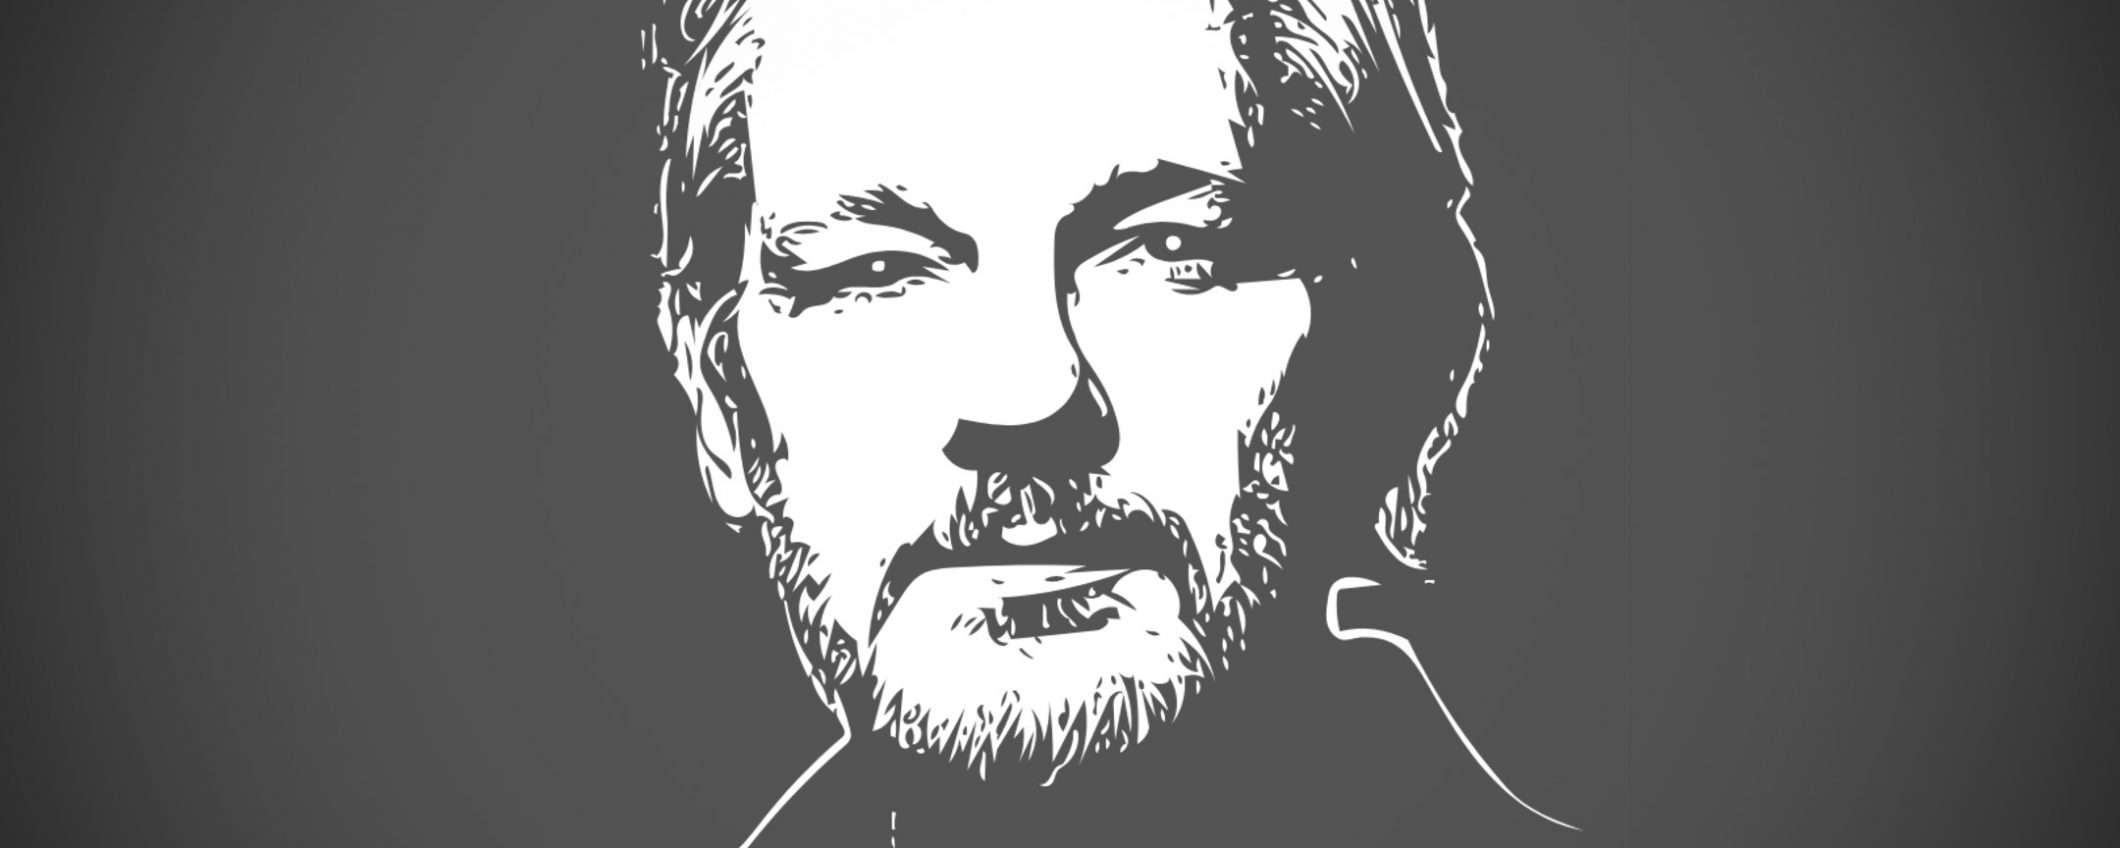 Assange: no all'estradizione, rischia il suicidio